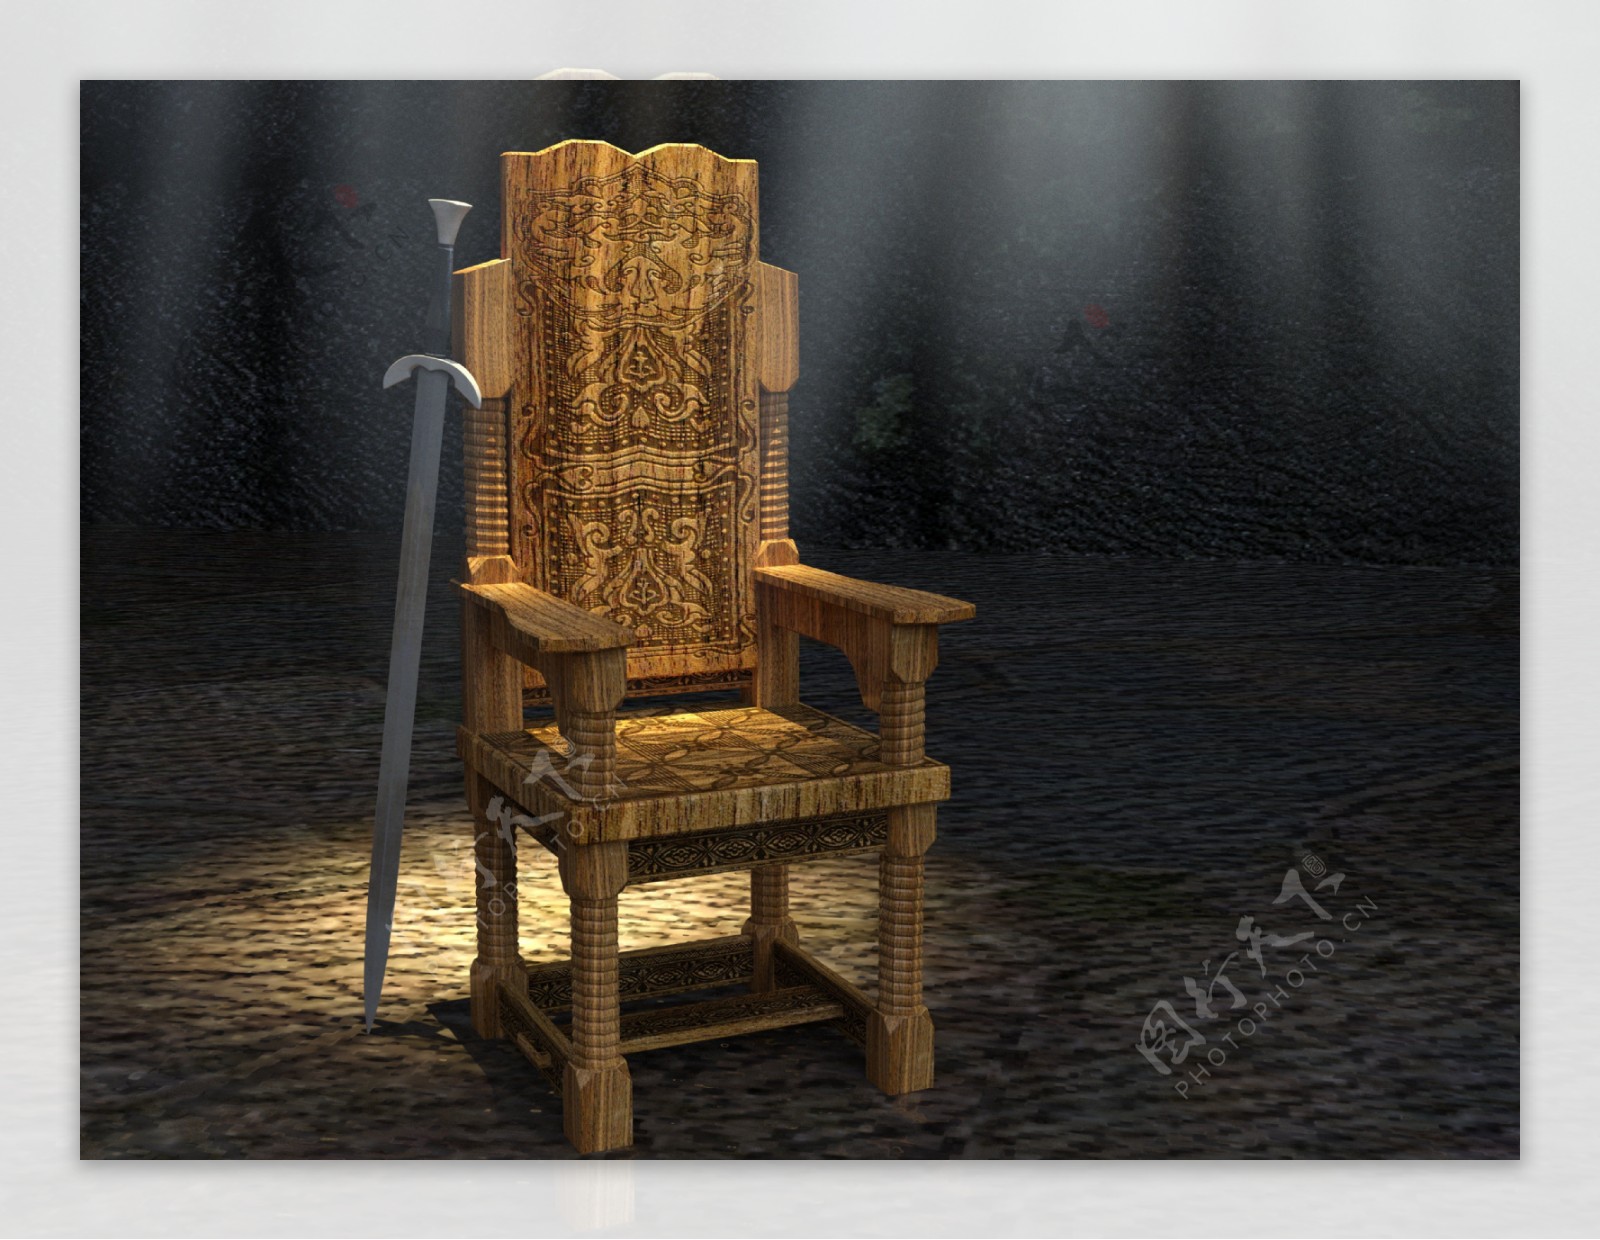 椅子剑中世纪心情神秘